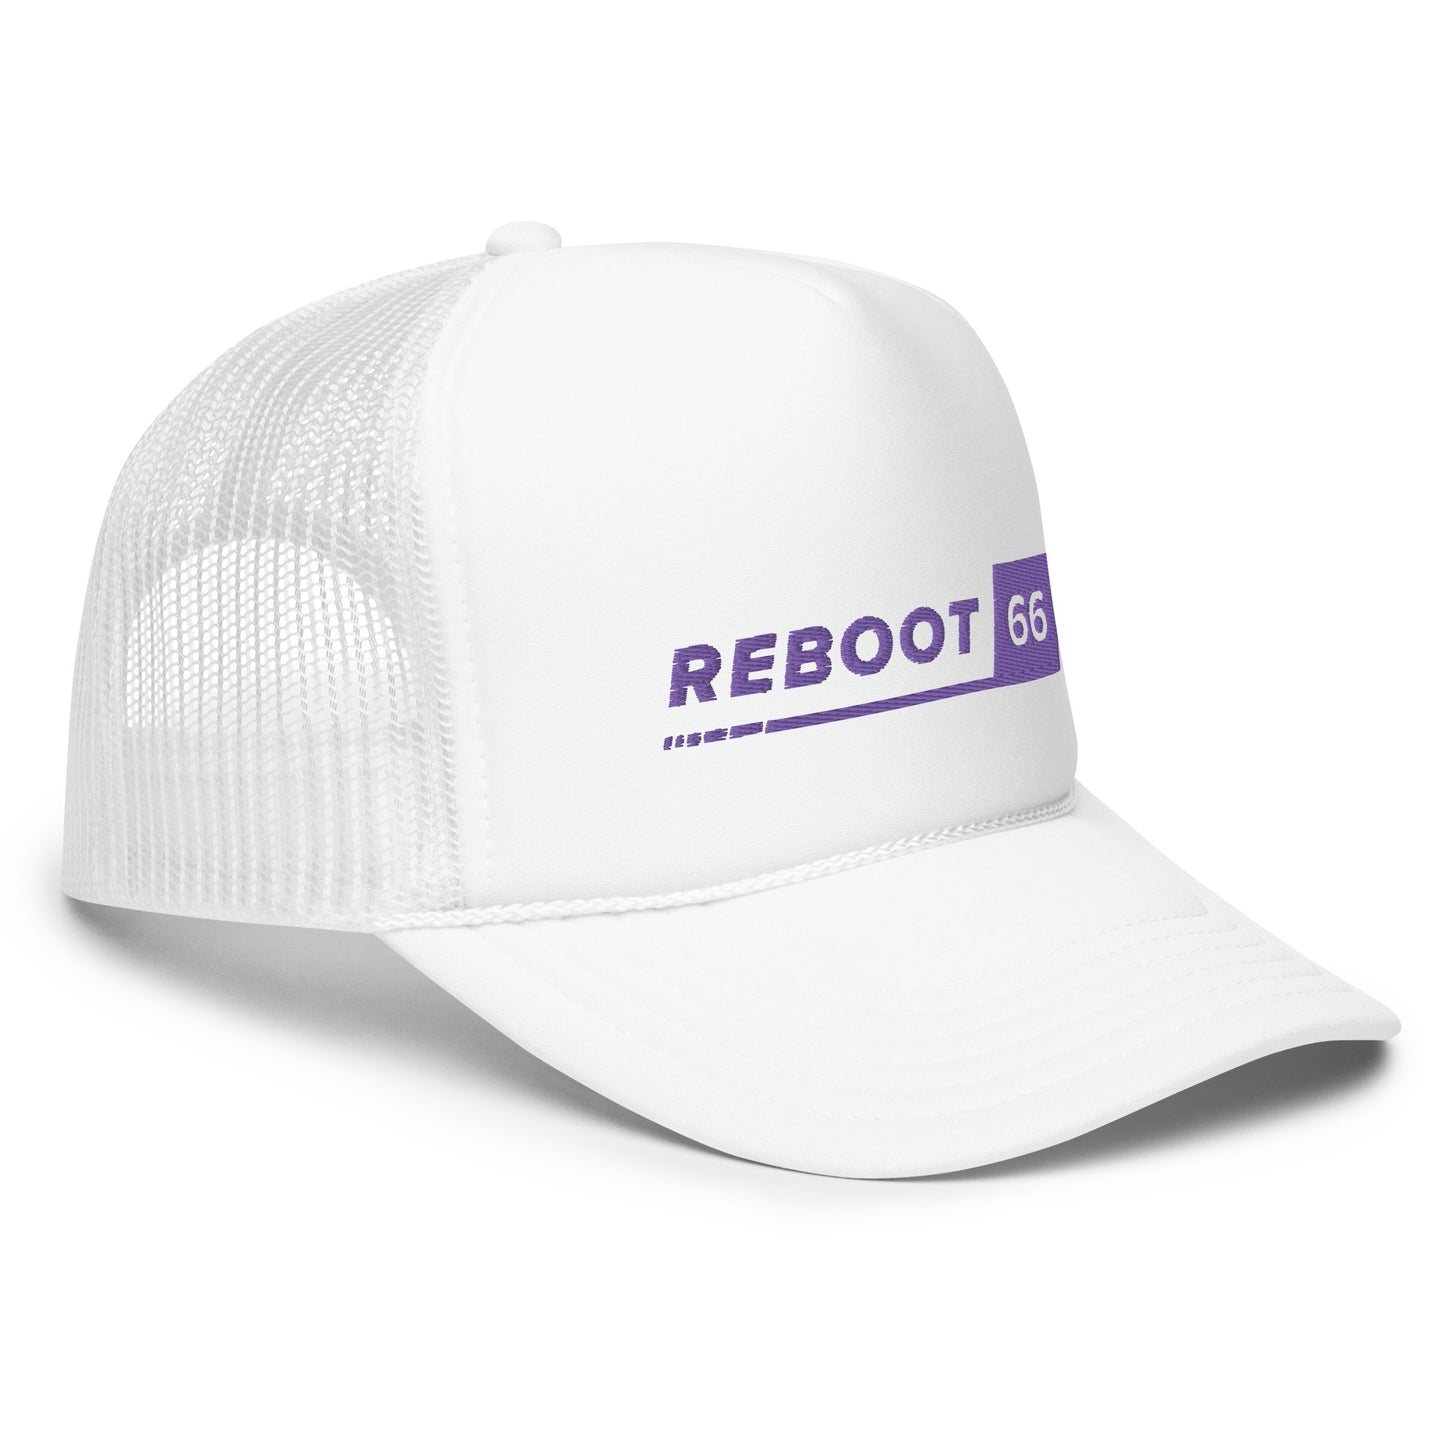 Reboot 66 - Foam trucker hat